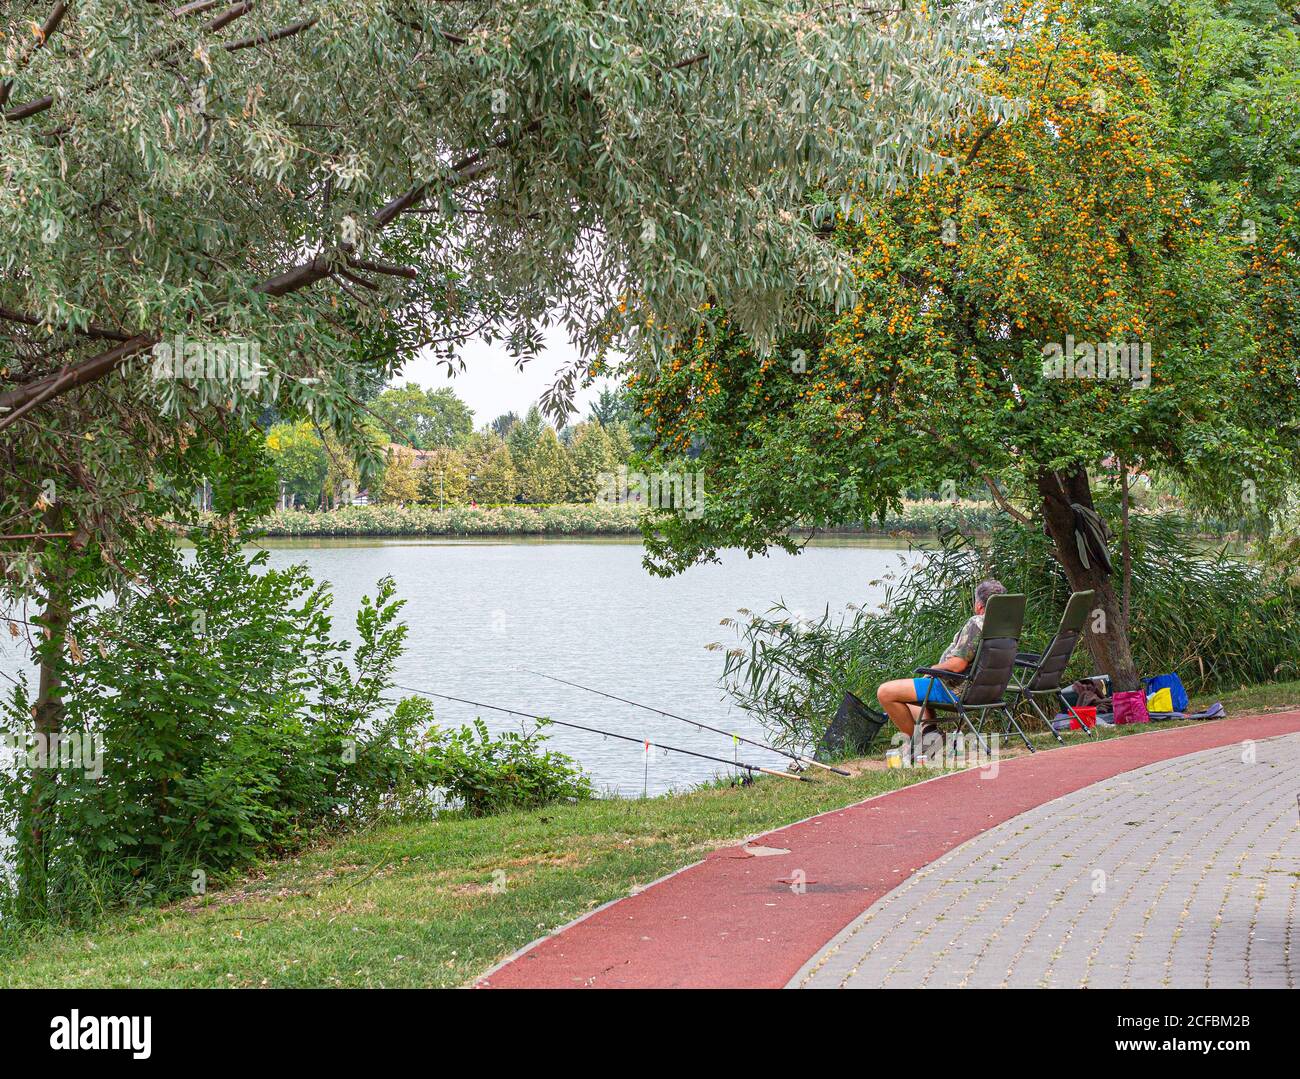 Pêche de pêcheur au lac assis sur une chaise sous le cerisier prune. Deux cannes à pêche montées sur le support et installées sur la rive d'un lac. Beaut Banque D'Images